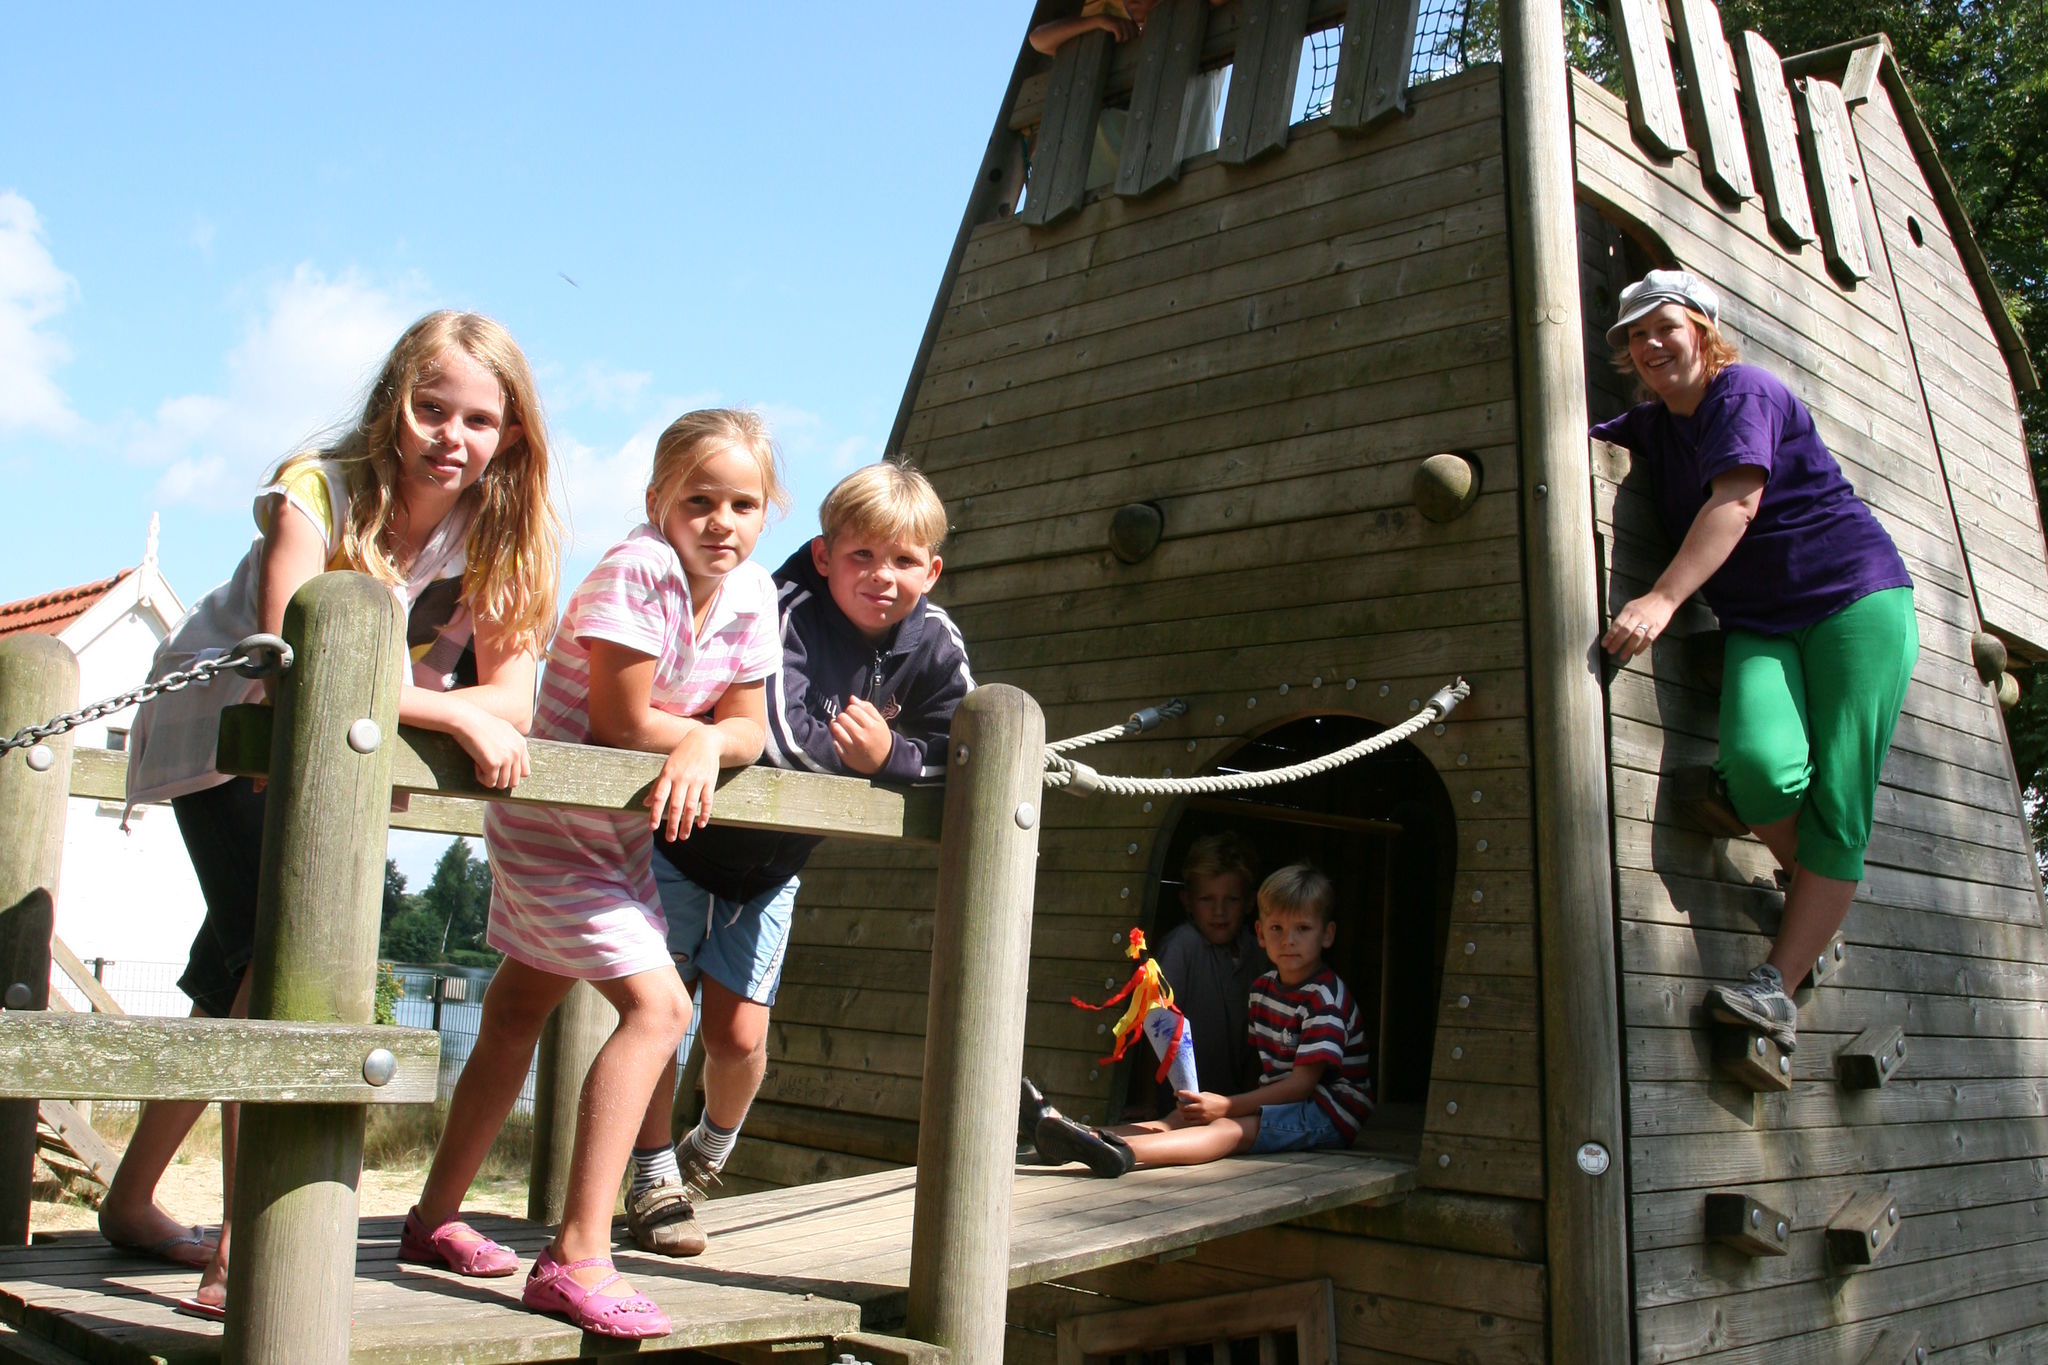 Freistehendes Ferienhaus mit Kombi-Mikrowelle in einem Ferienpark in Twente